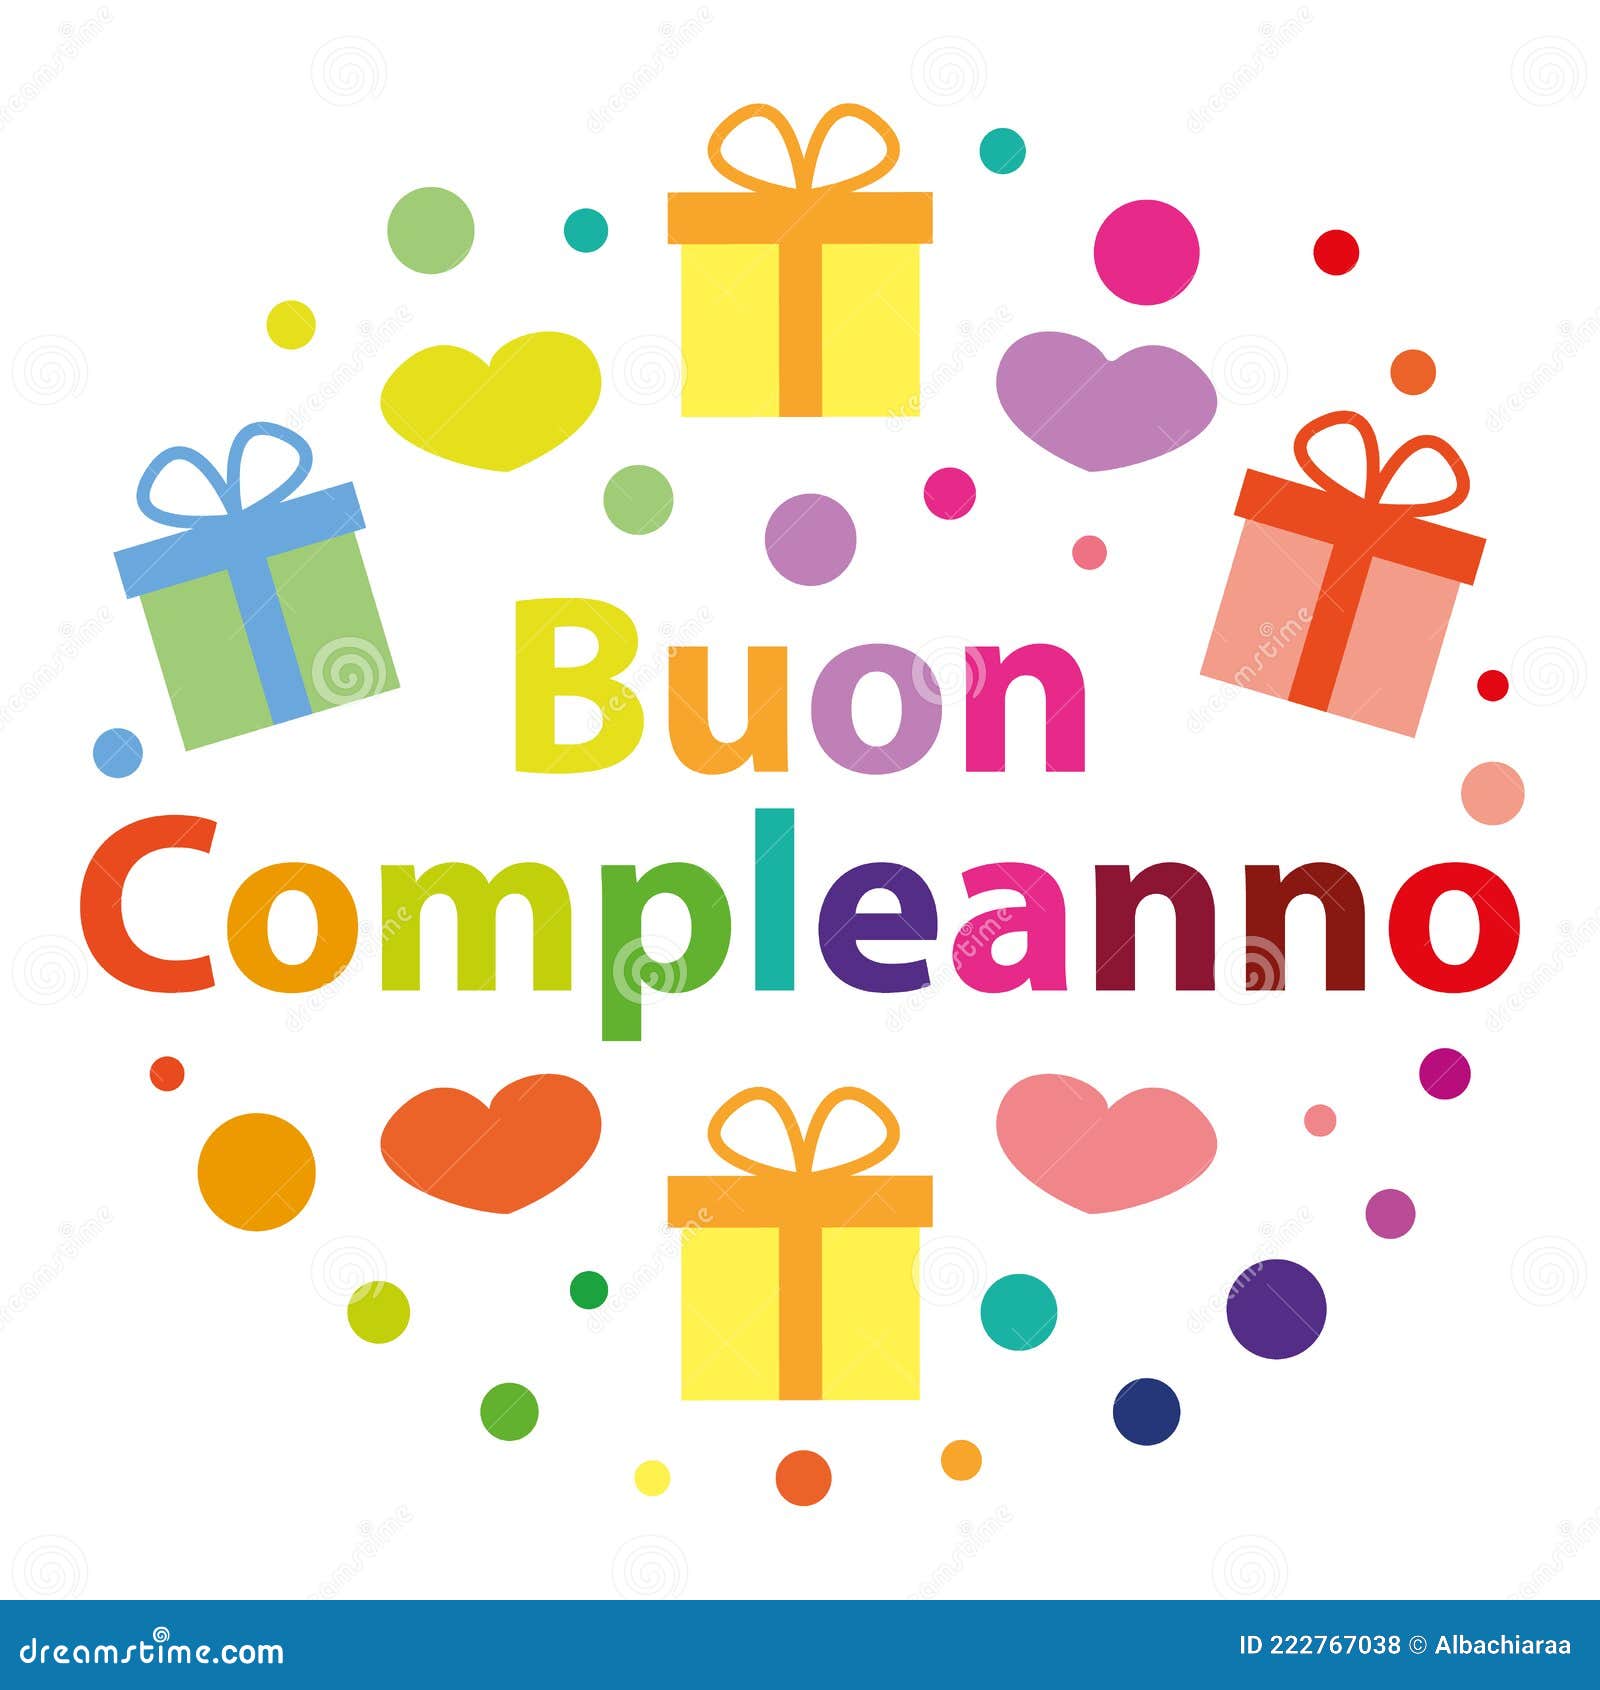 Buon Compleanno Happy Birthday in Italian | Postcard